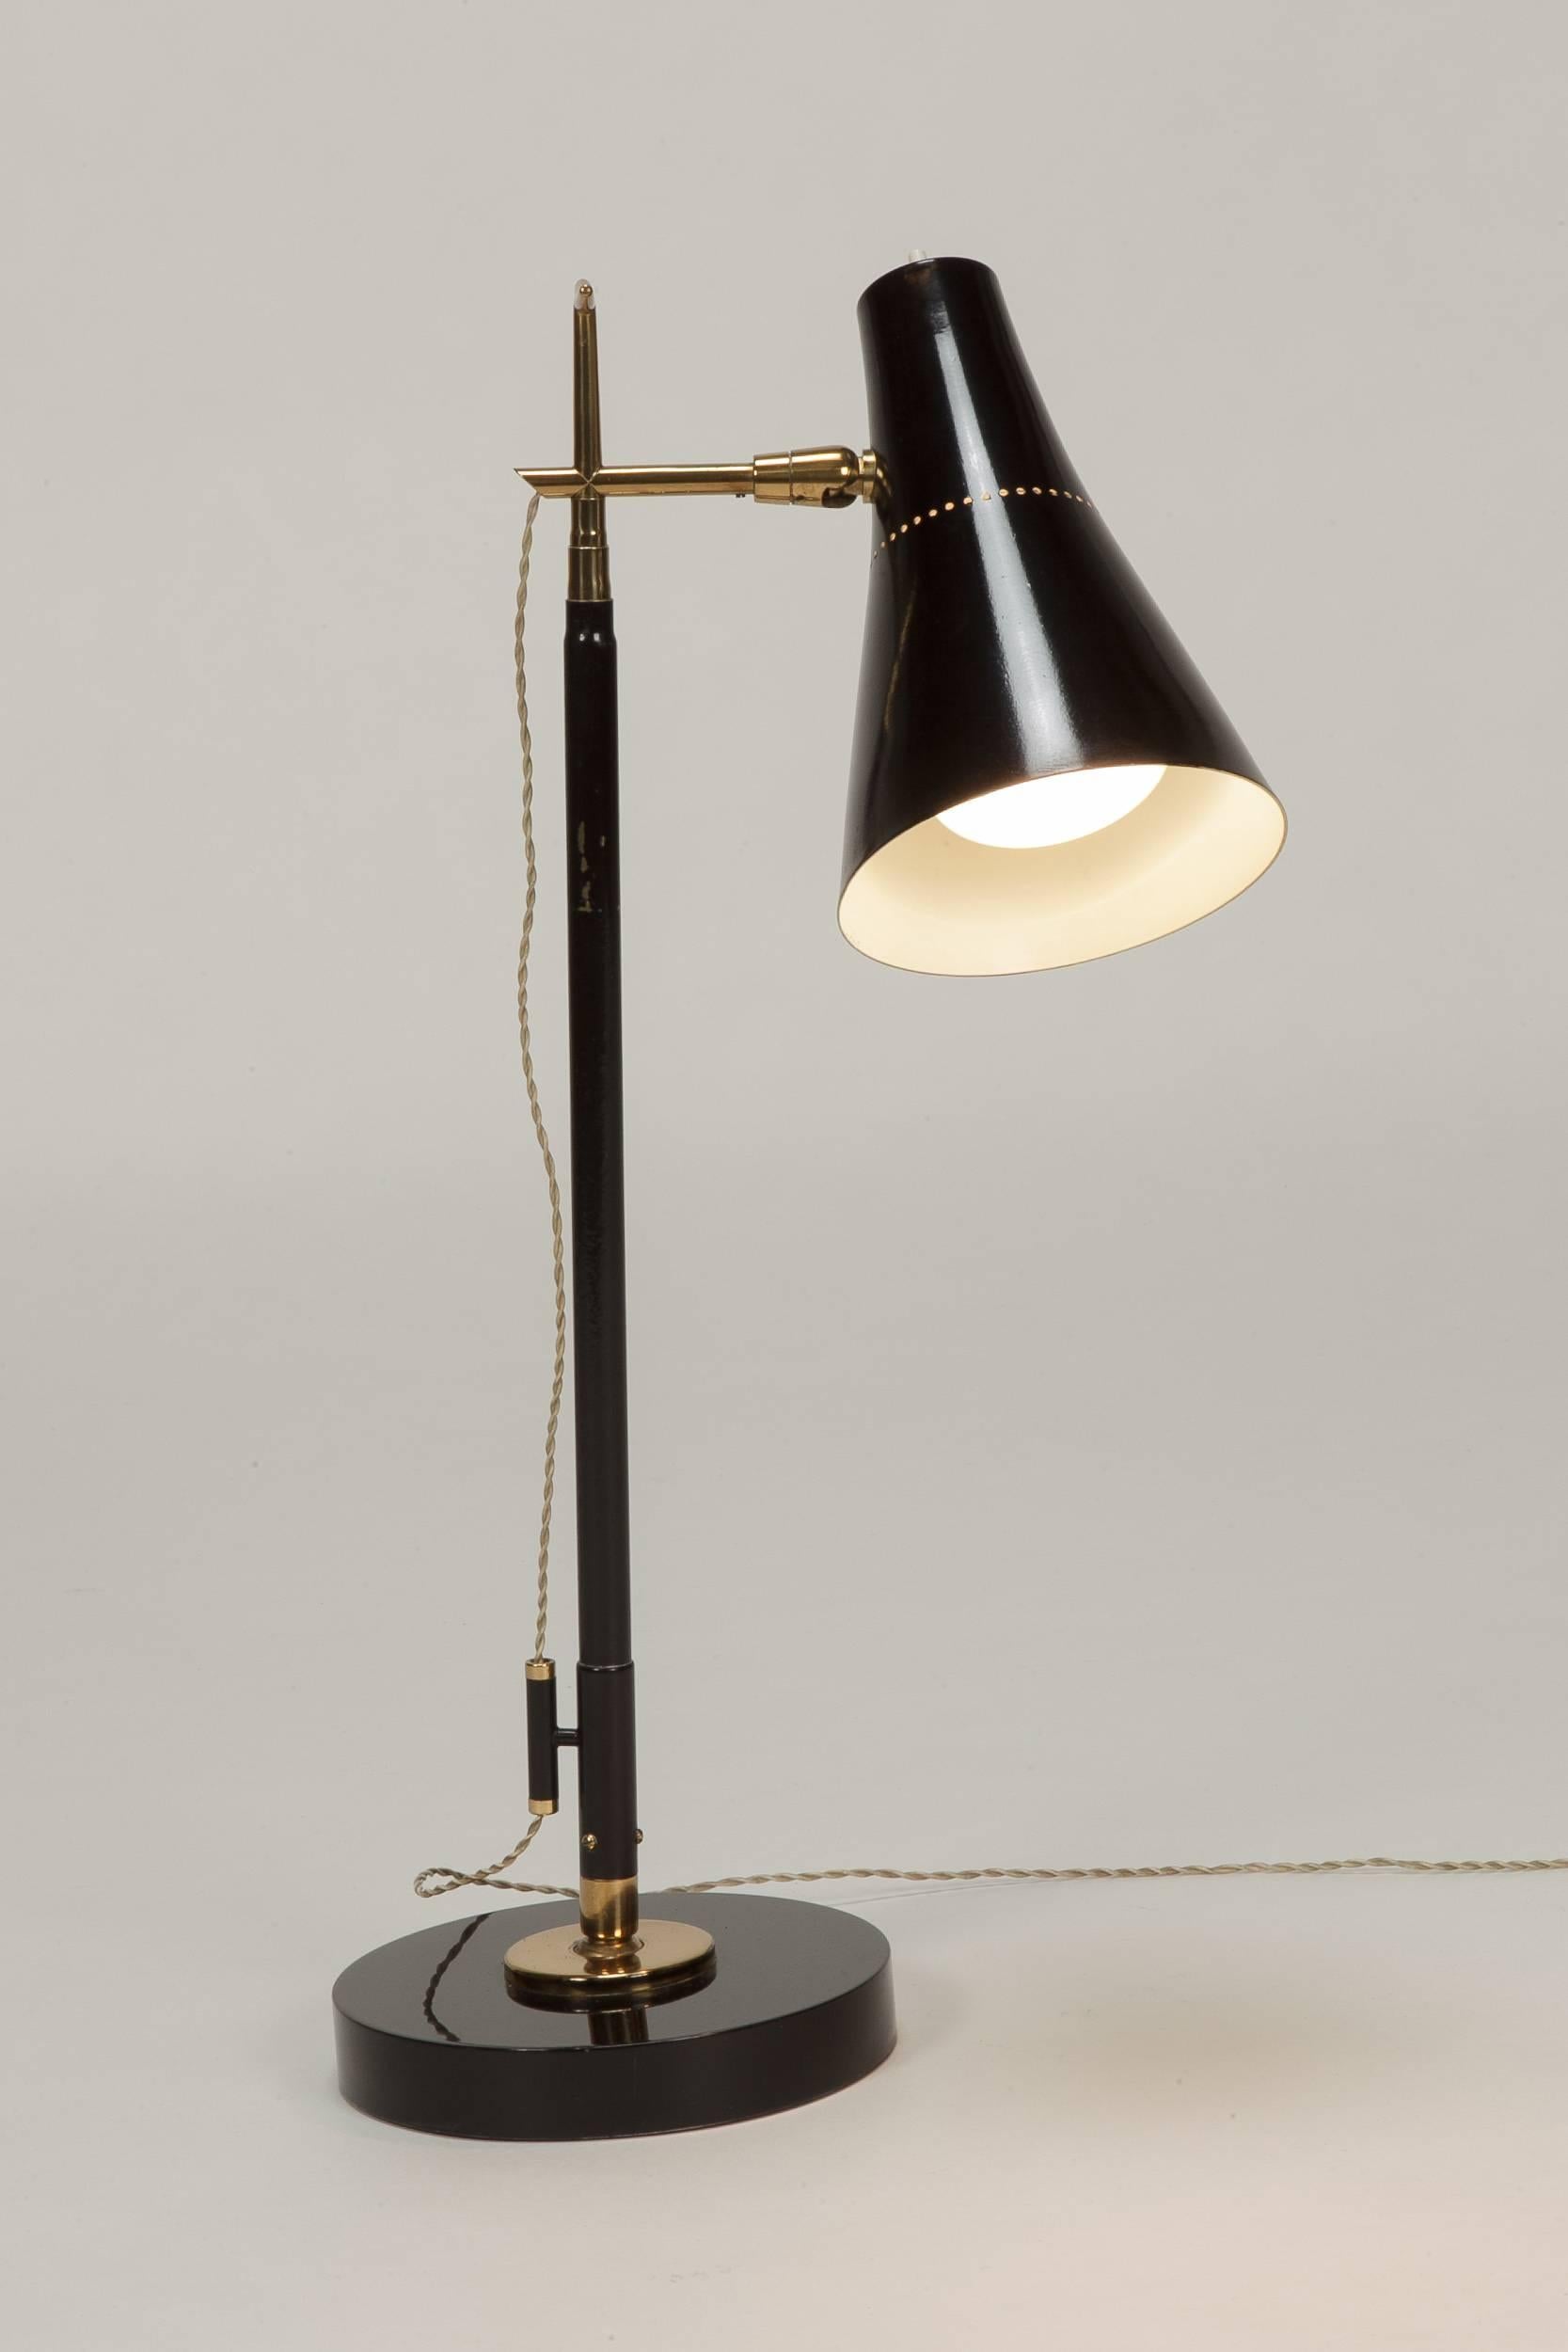 Lacquered Rare Giuseppe Ostuni Floor Lamp Model 201 for Oluce 1951 For Sale